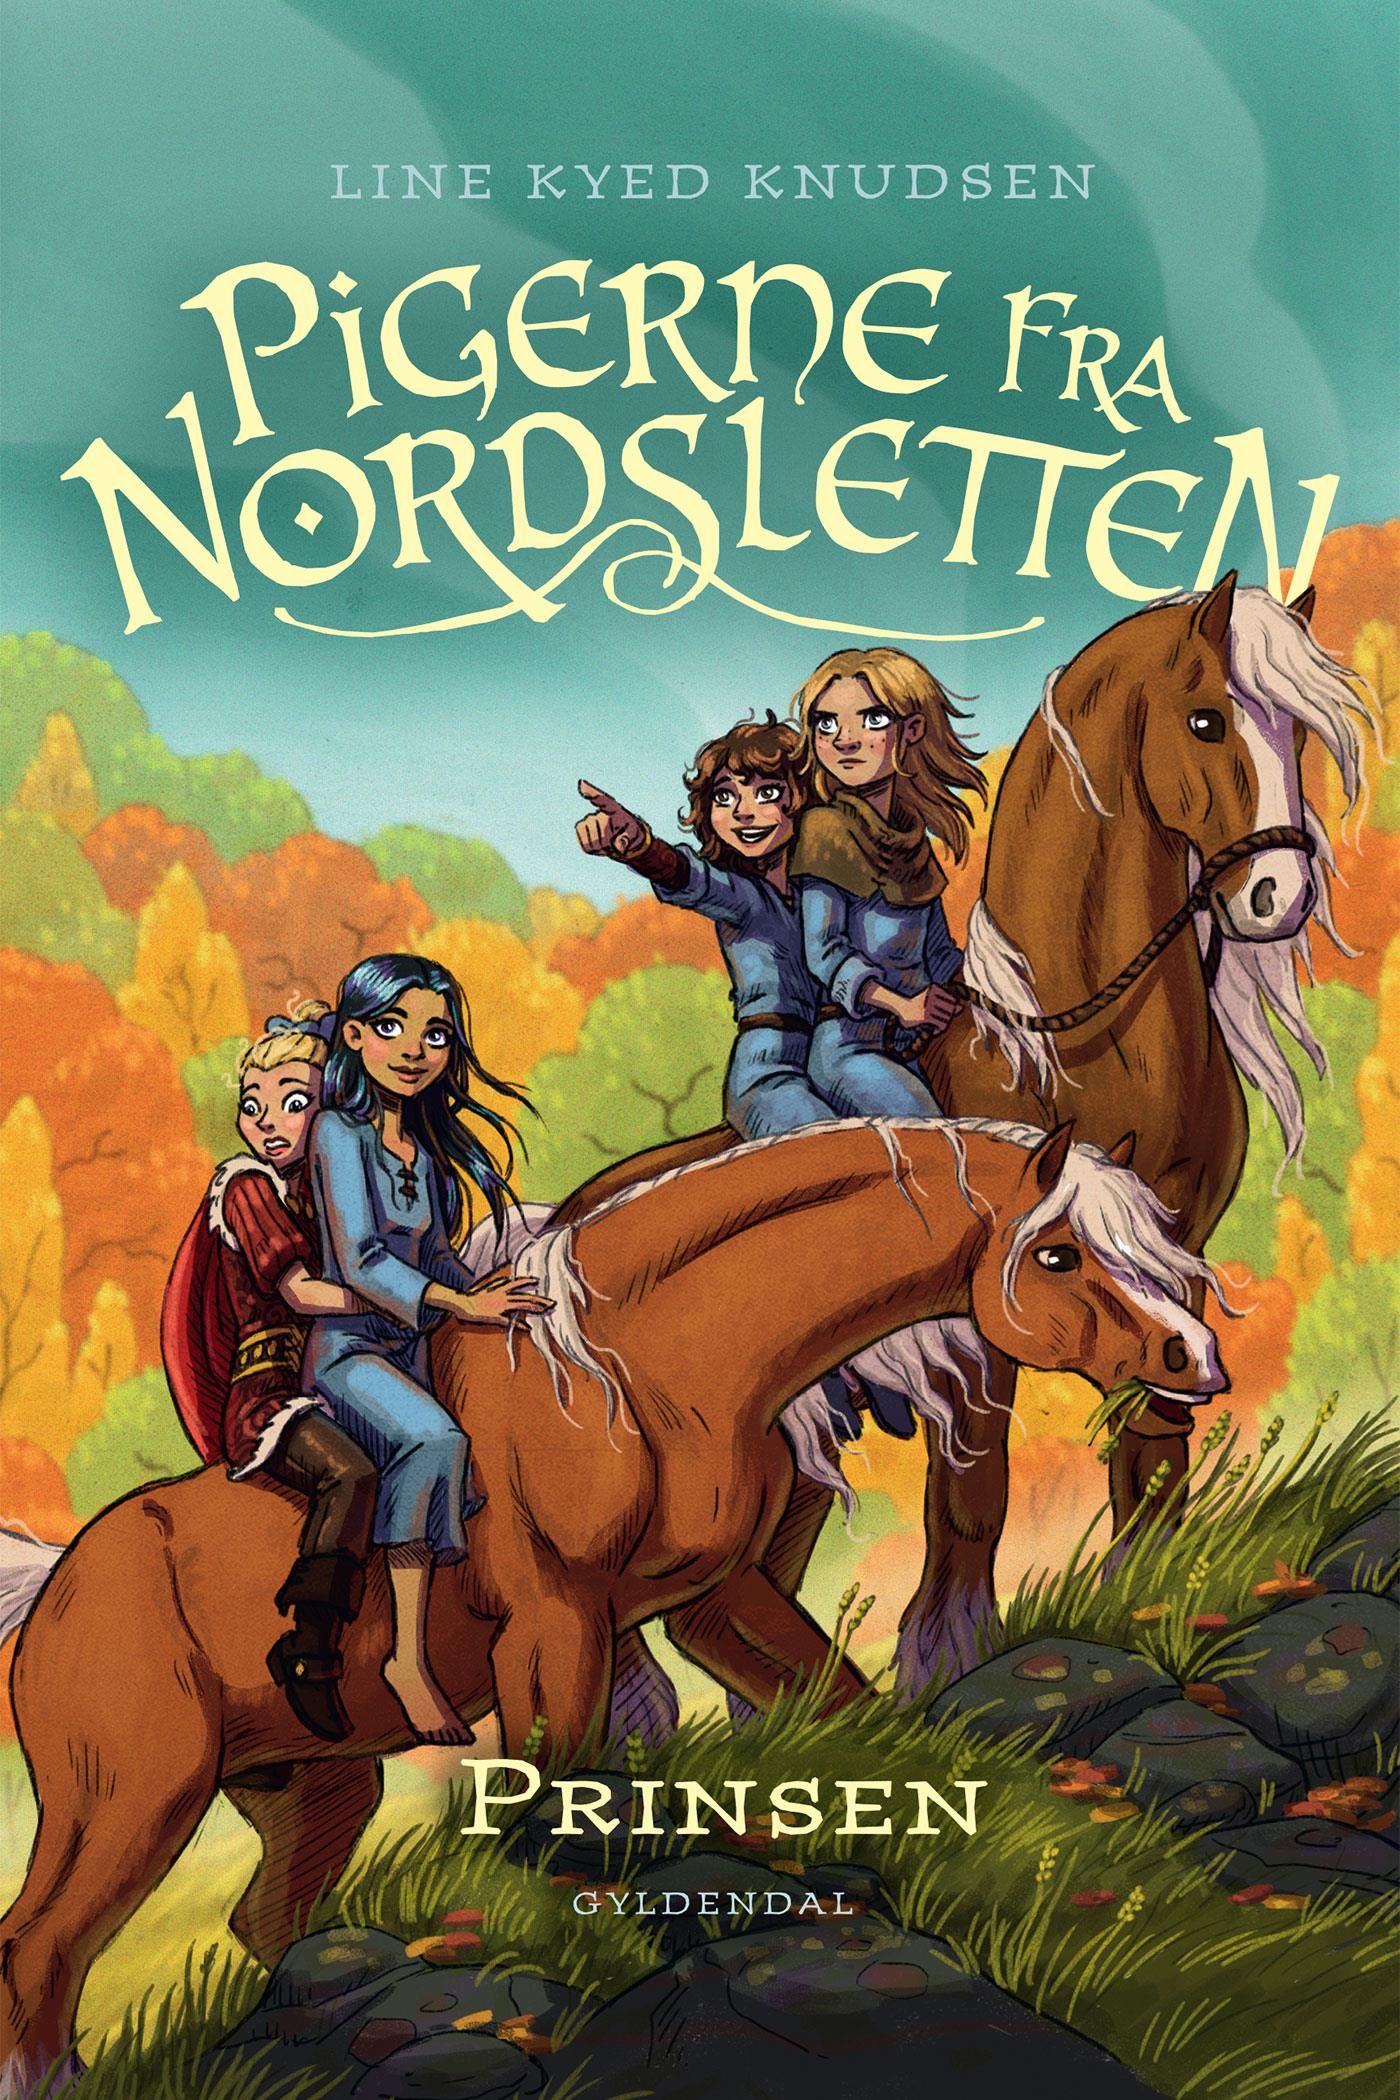 Pigerne fra Nordsletten 1 - Prinsen, eBook by Line Kyed Knudsen